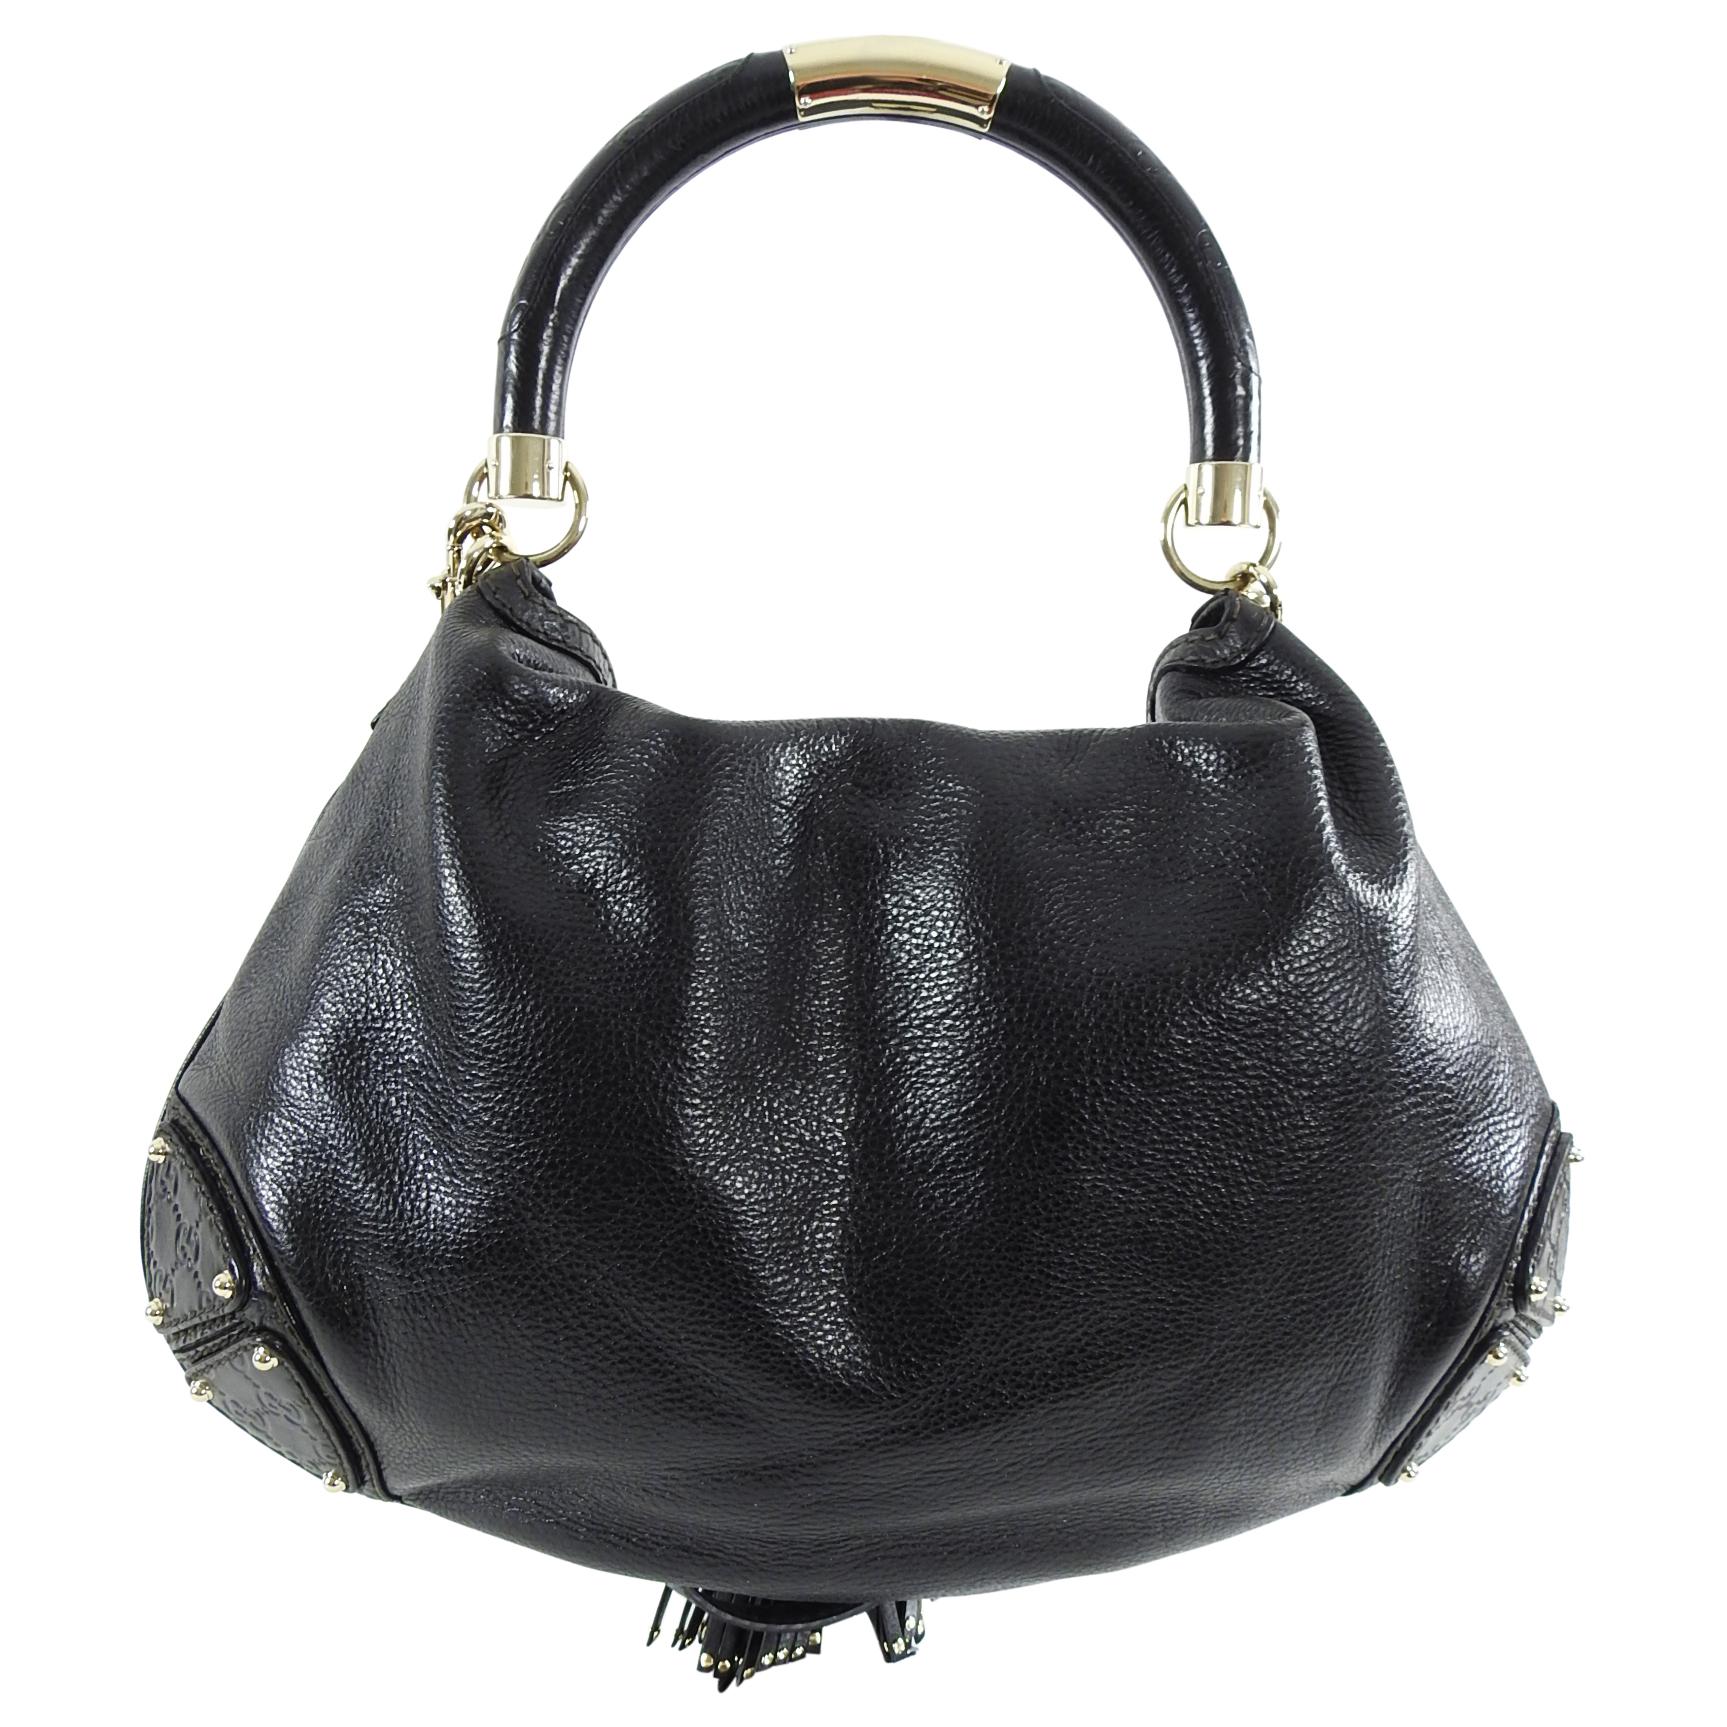 Gucci Indy Hobo Black Leather Large Tassel Bag 1